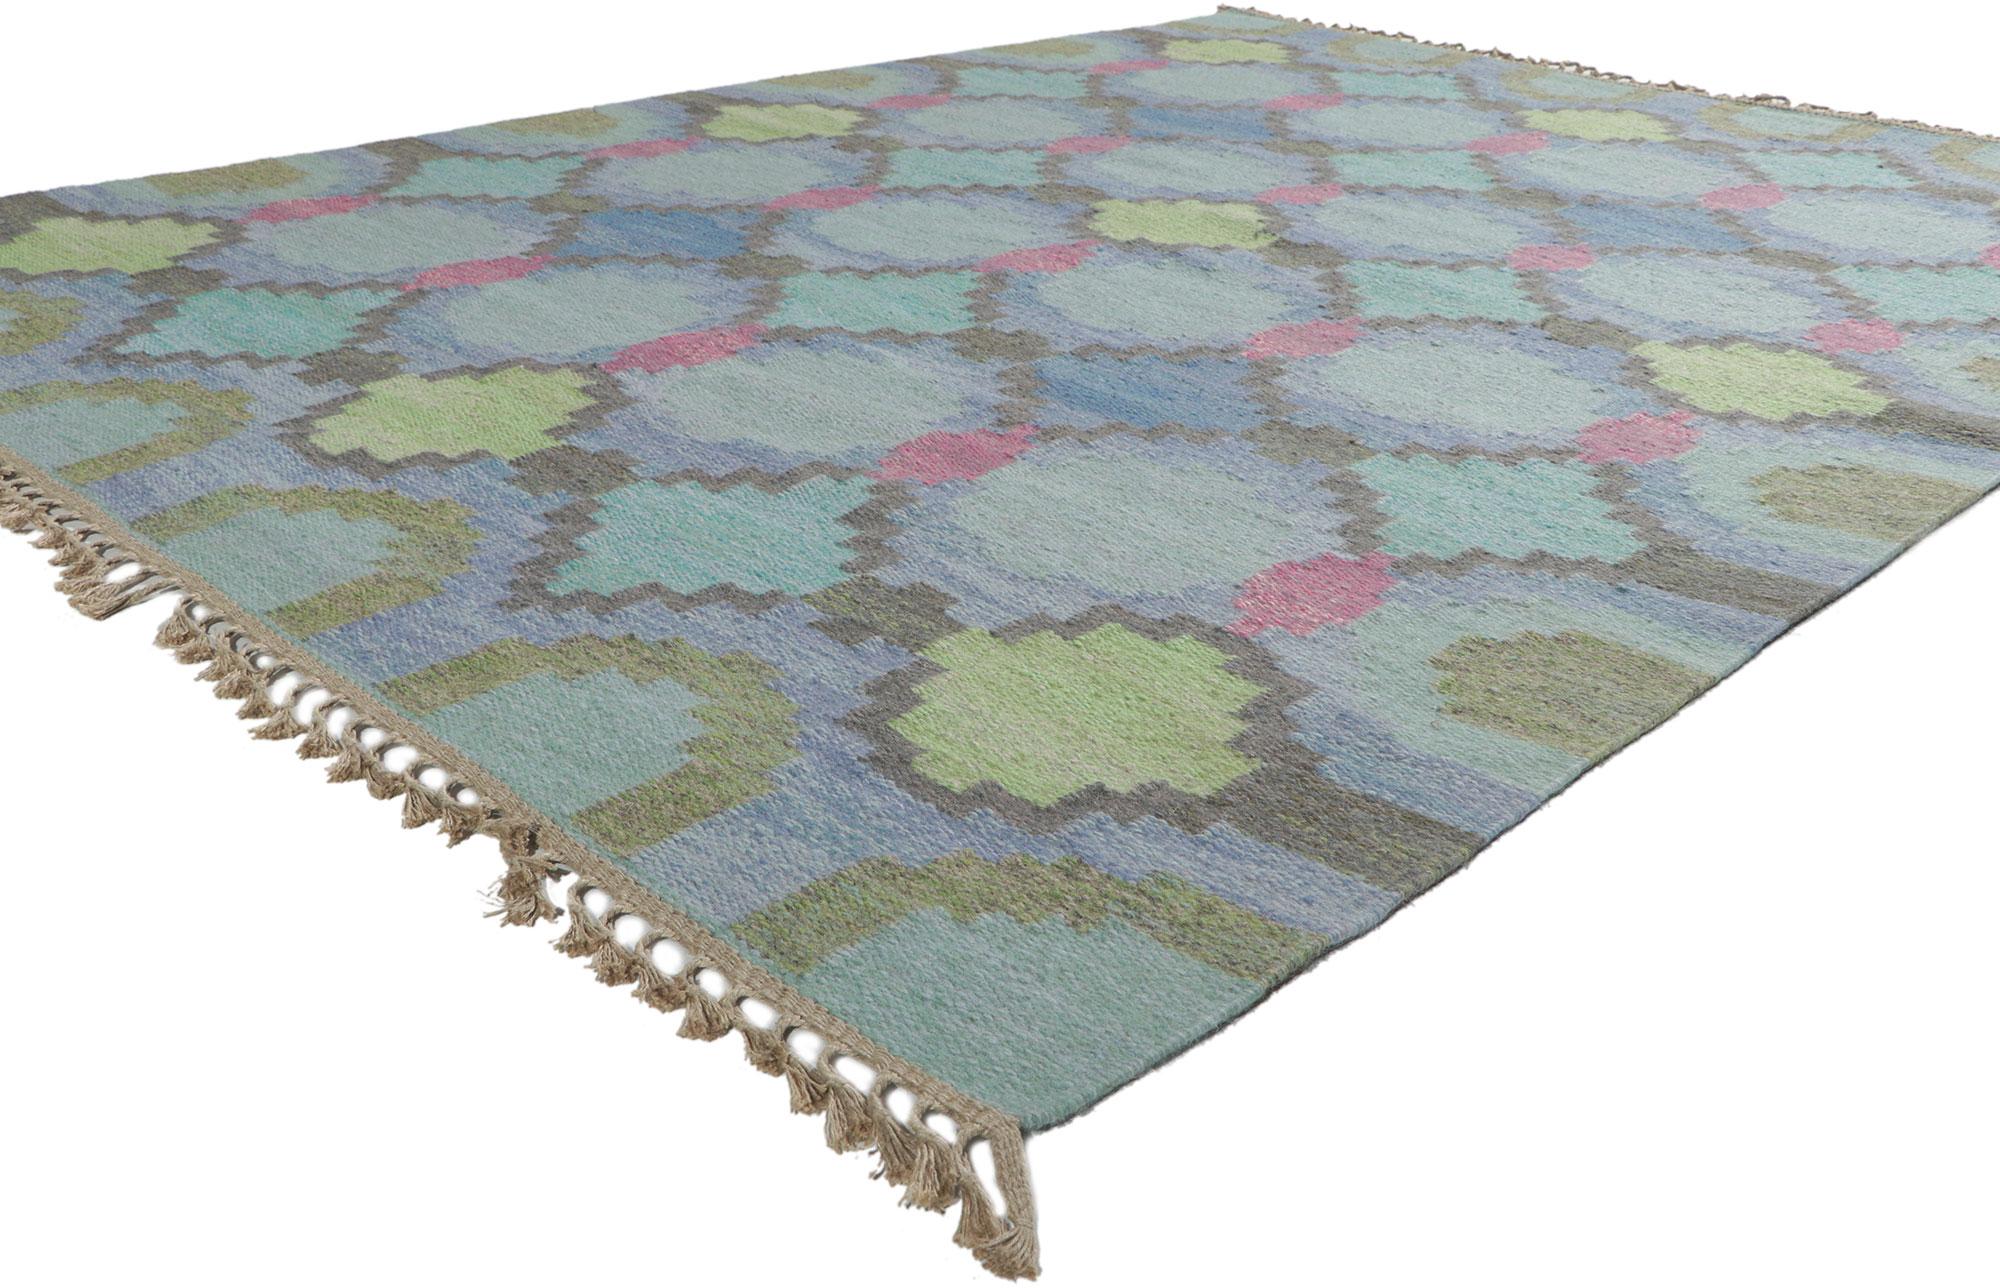 78470 Schwedischer Kilim-Rollakan-Teppich von Judith Johansson, 06'03 x 08'03. Mit seinem skandinavisch-modernen Stil, seinen unglaublichen Details und seiner Textur ist dieser handgewebte schwedische Rollkan-Teppich aus Wolle eine fesselnde Vision